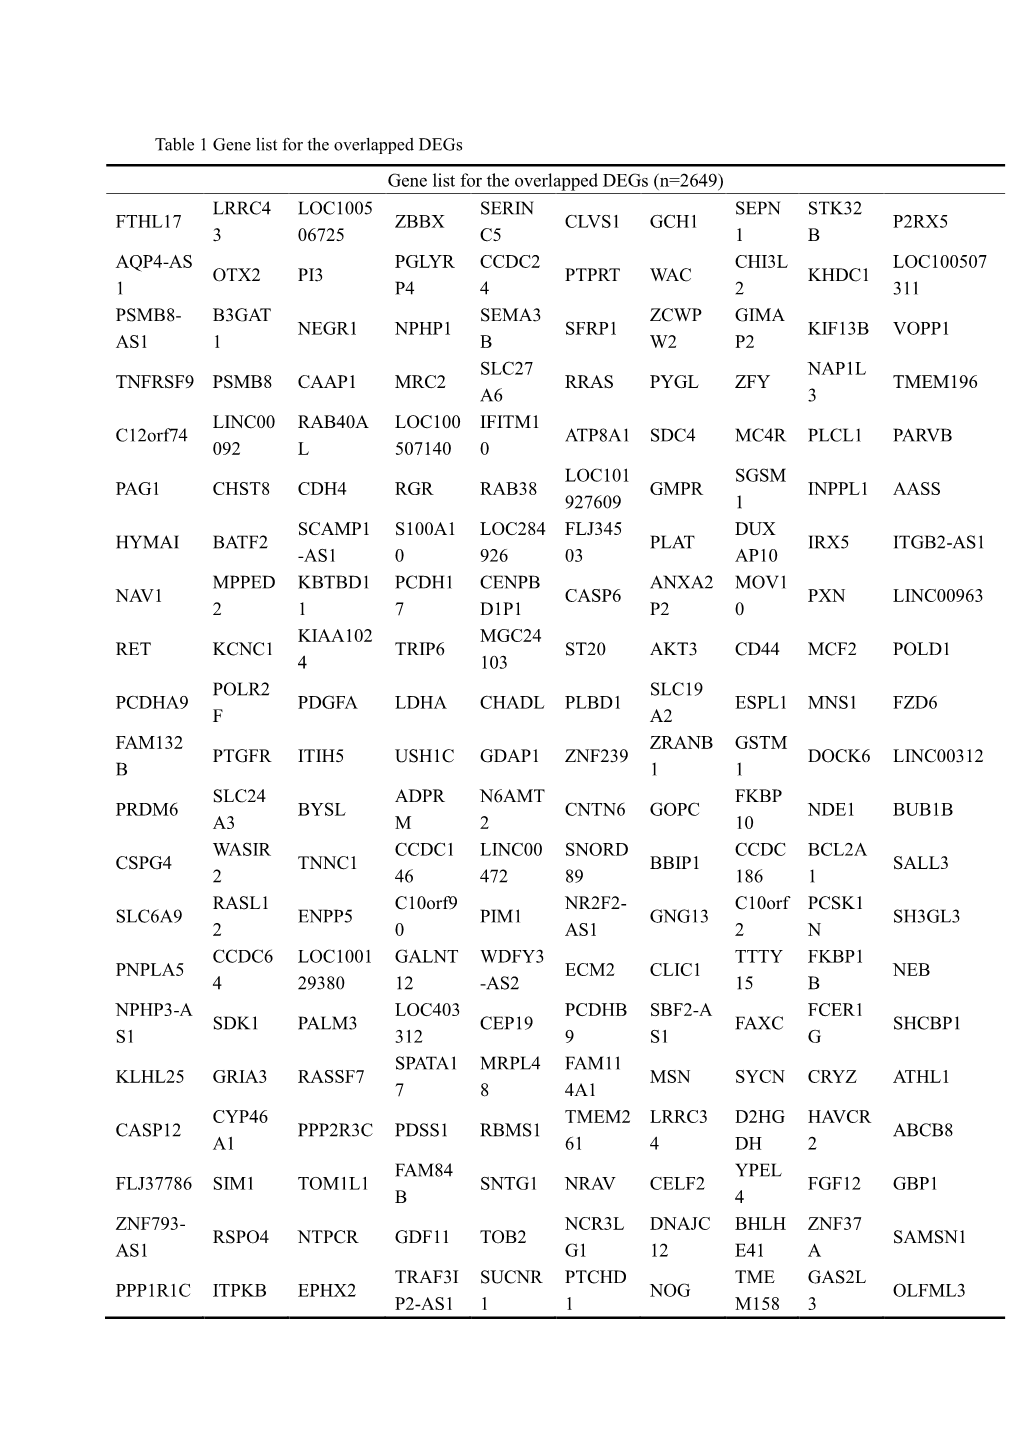 Gene List for the Overlapped Degs (N=2649)